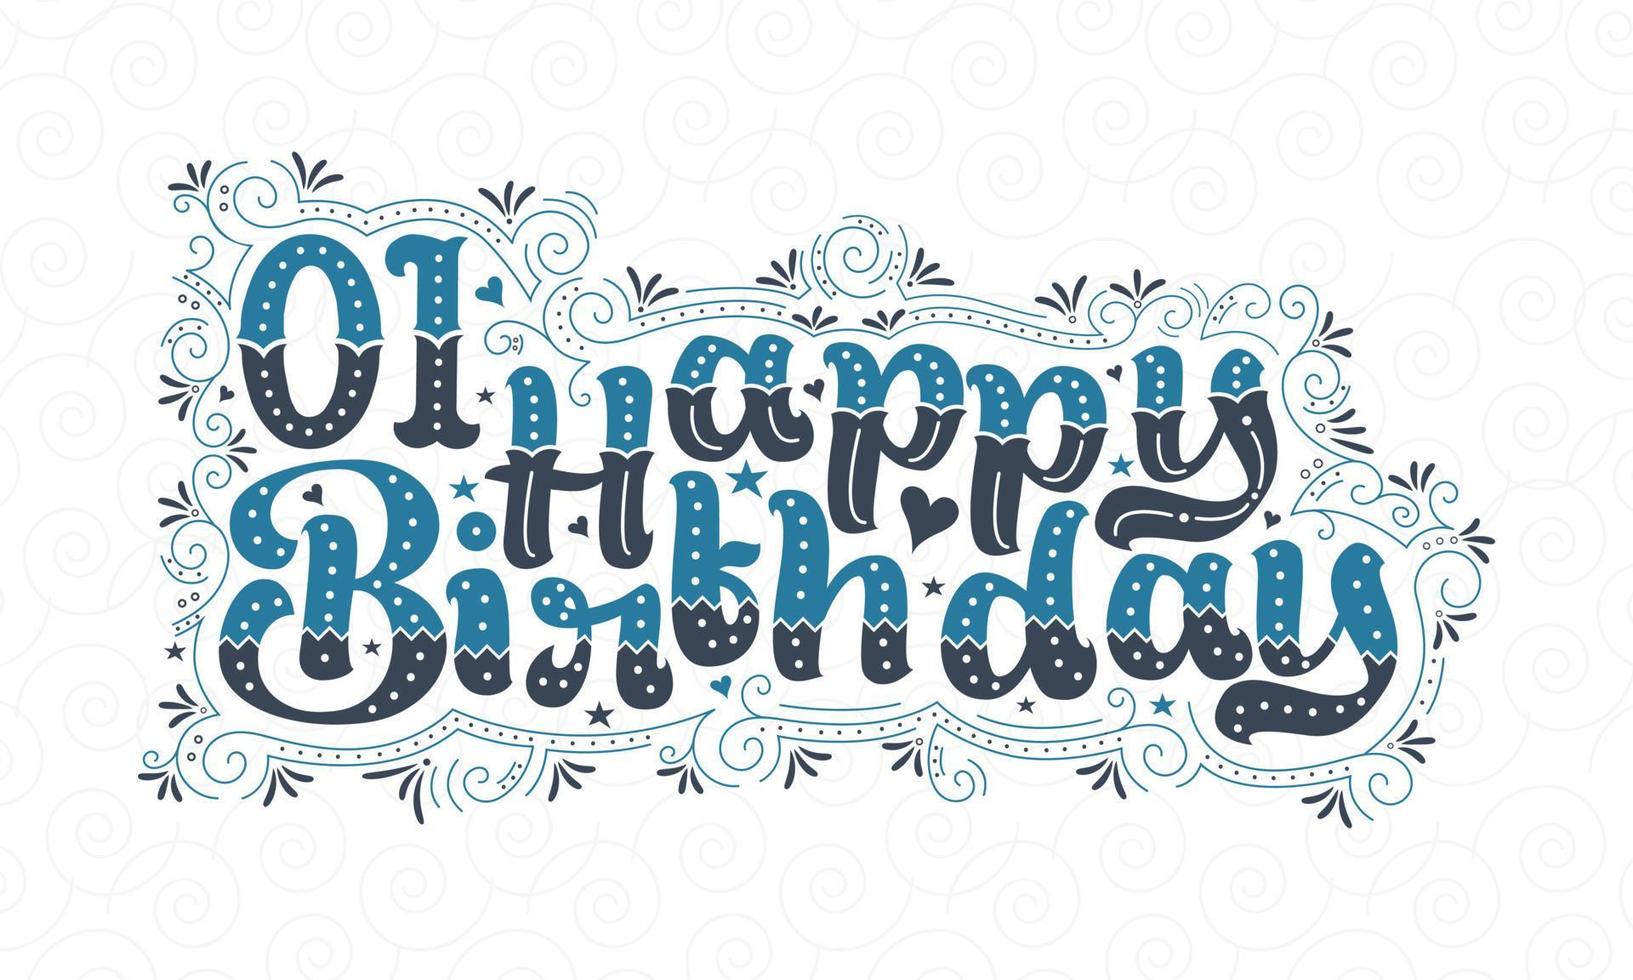 Primeras letras de feliz cumpleaños, hermoso diseño tipográfico de cumpleaños de 1 año con puntos, líneas y hojas azules y negros. vector